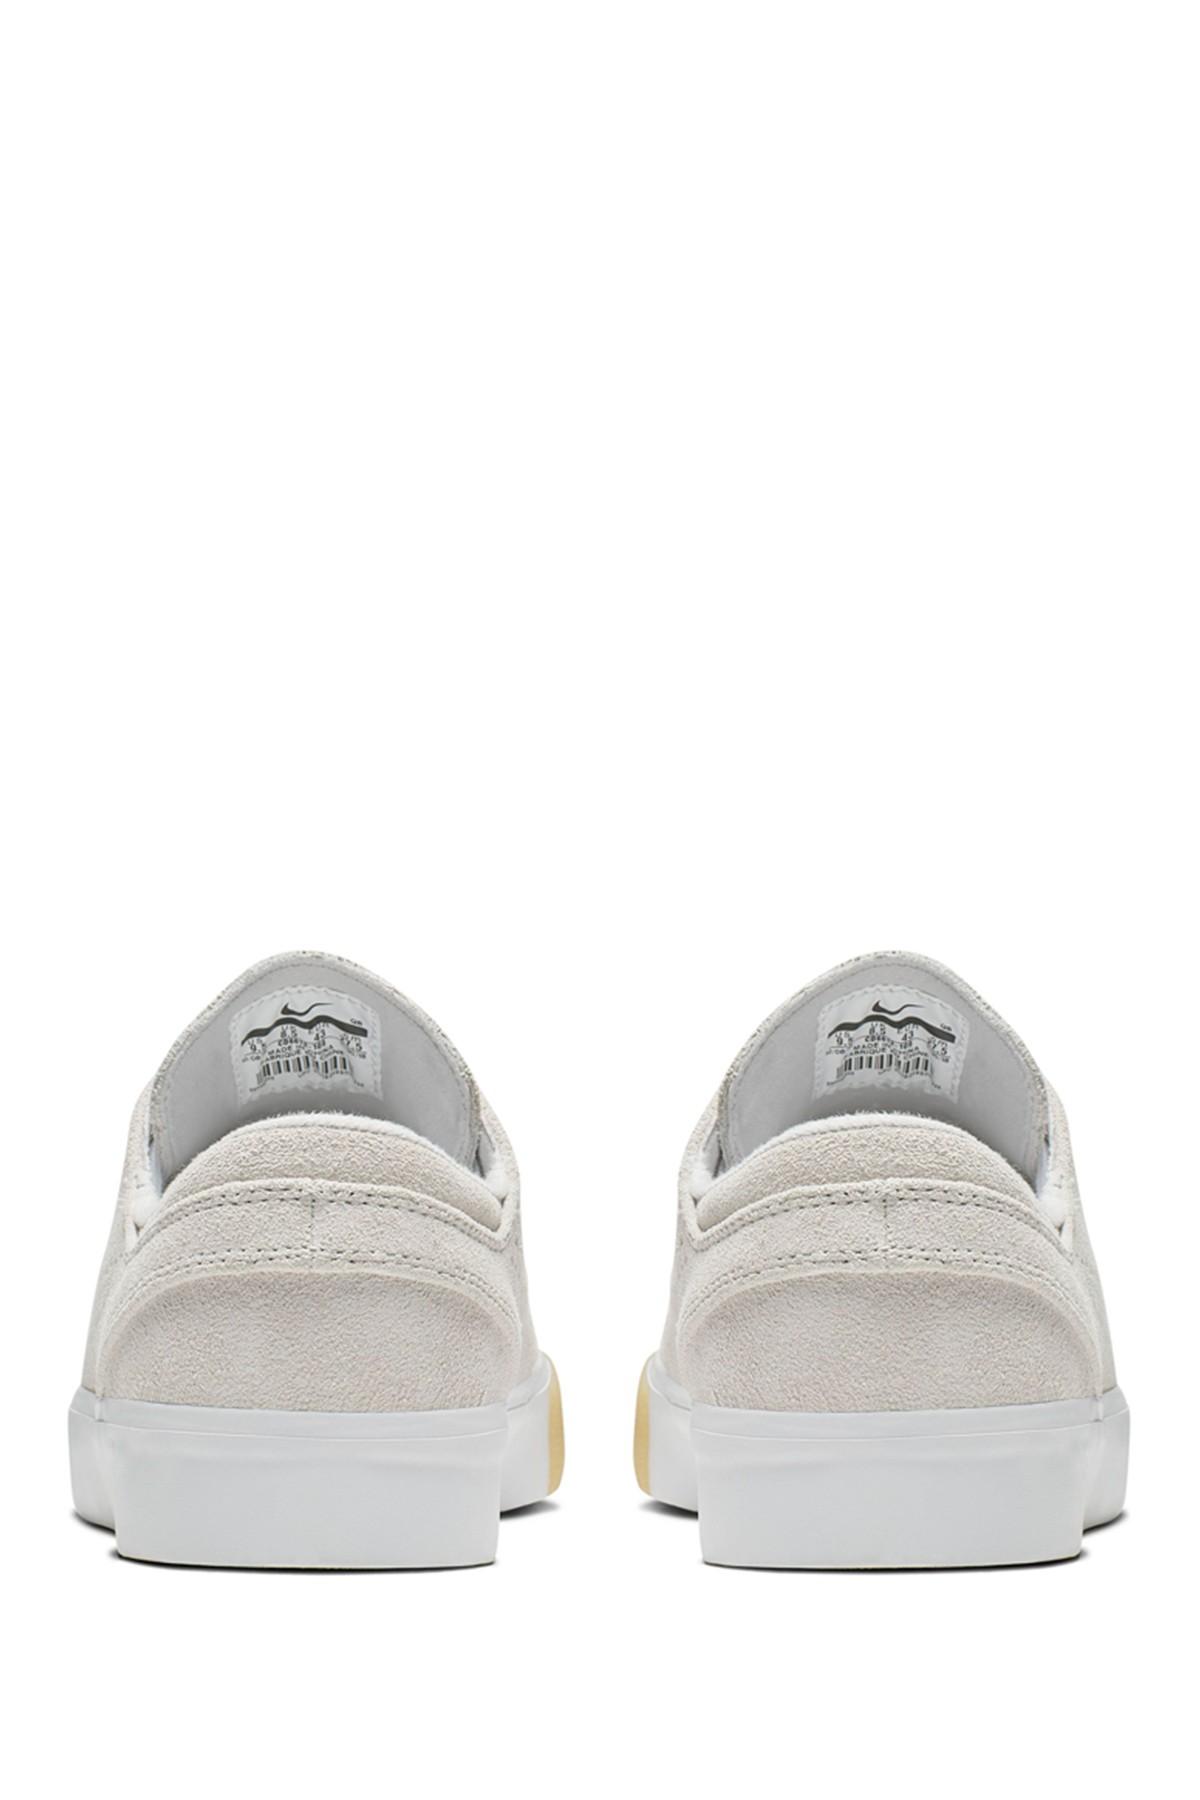 Nike Sb Zoom Stefan Janoski Rm Se Skate Shoe in White for Men | Lyst